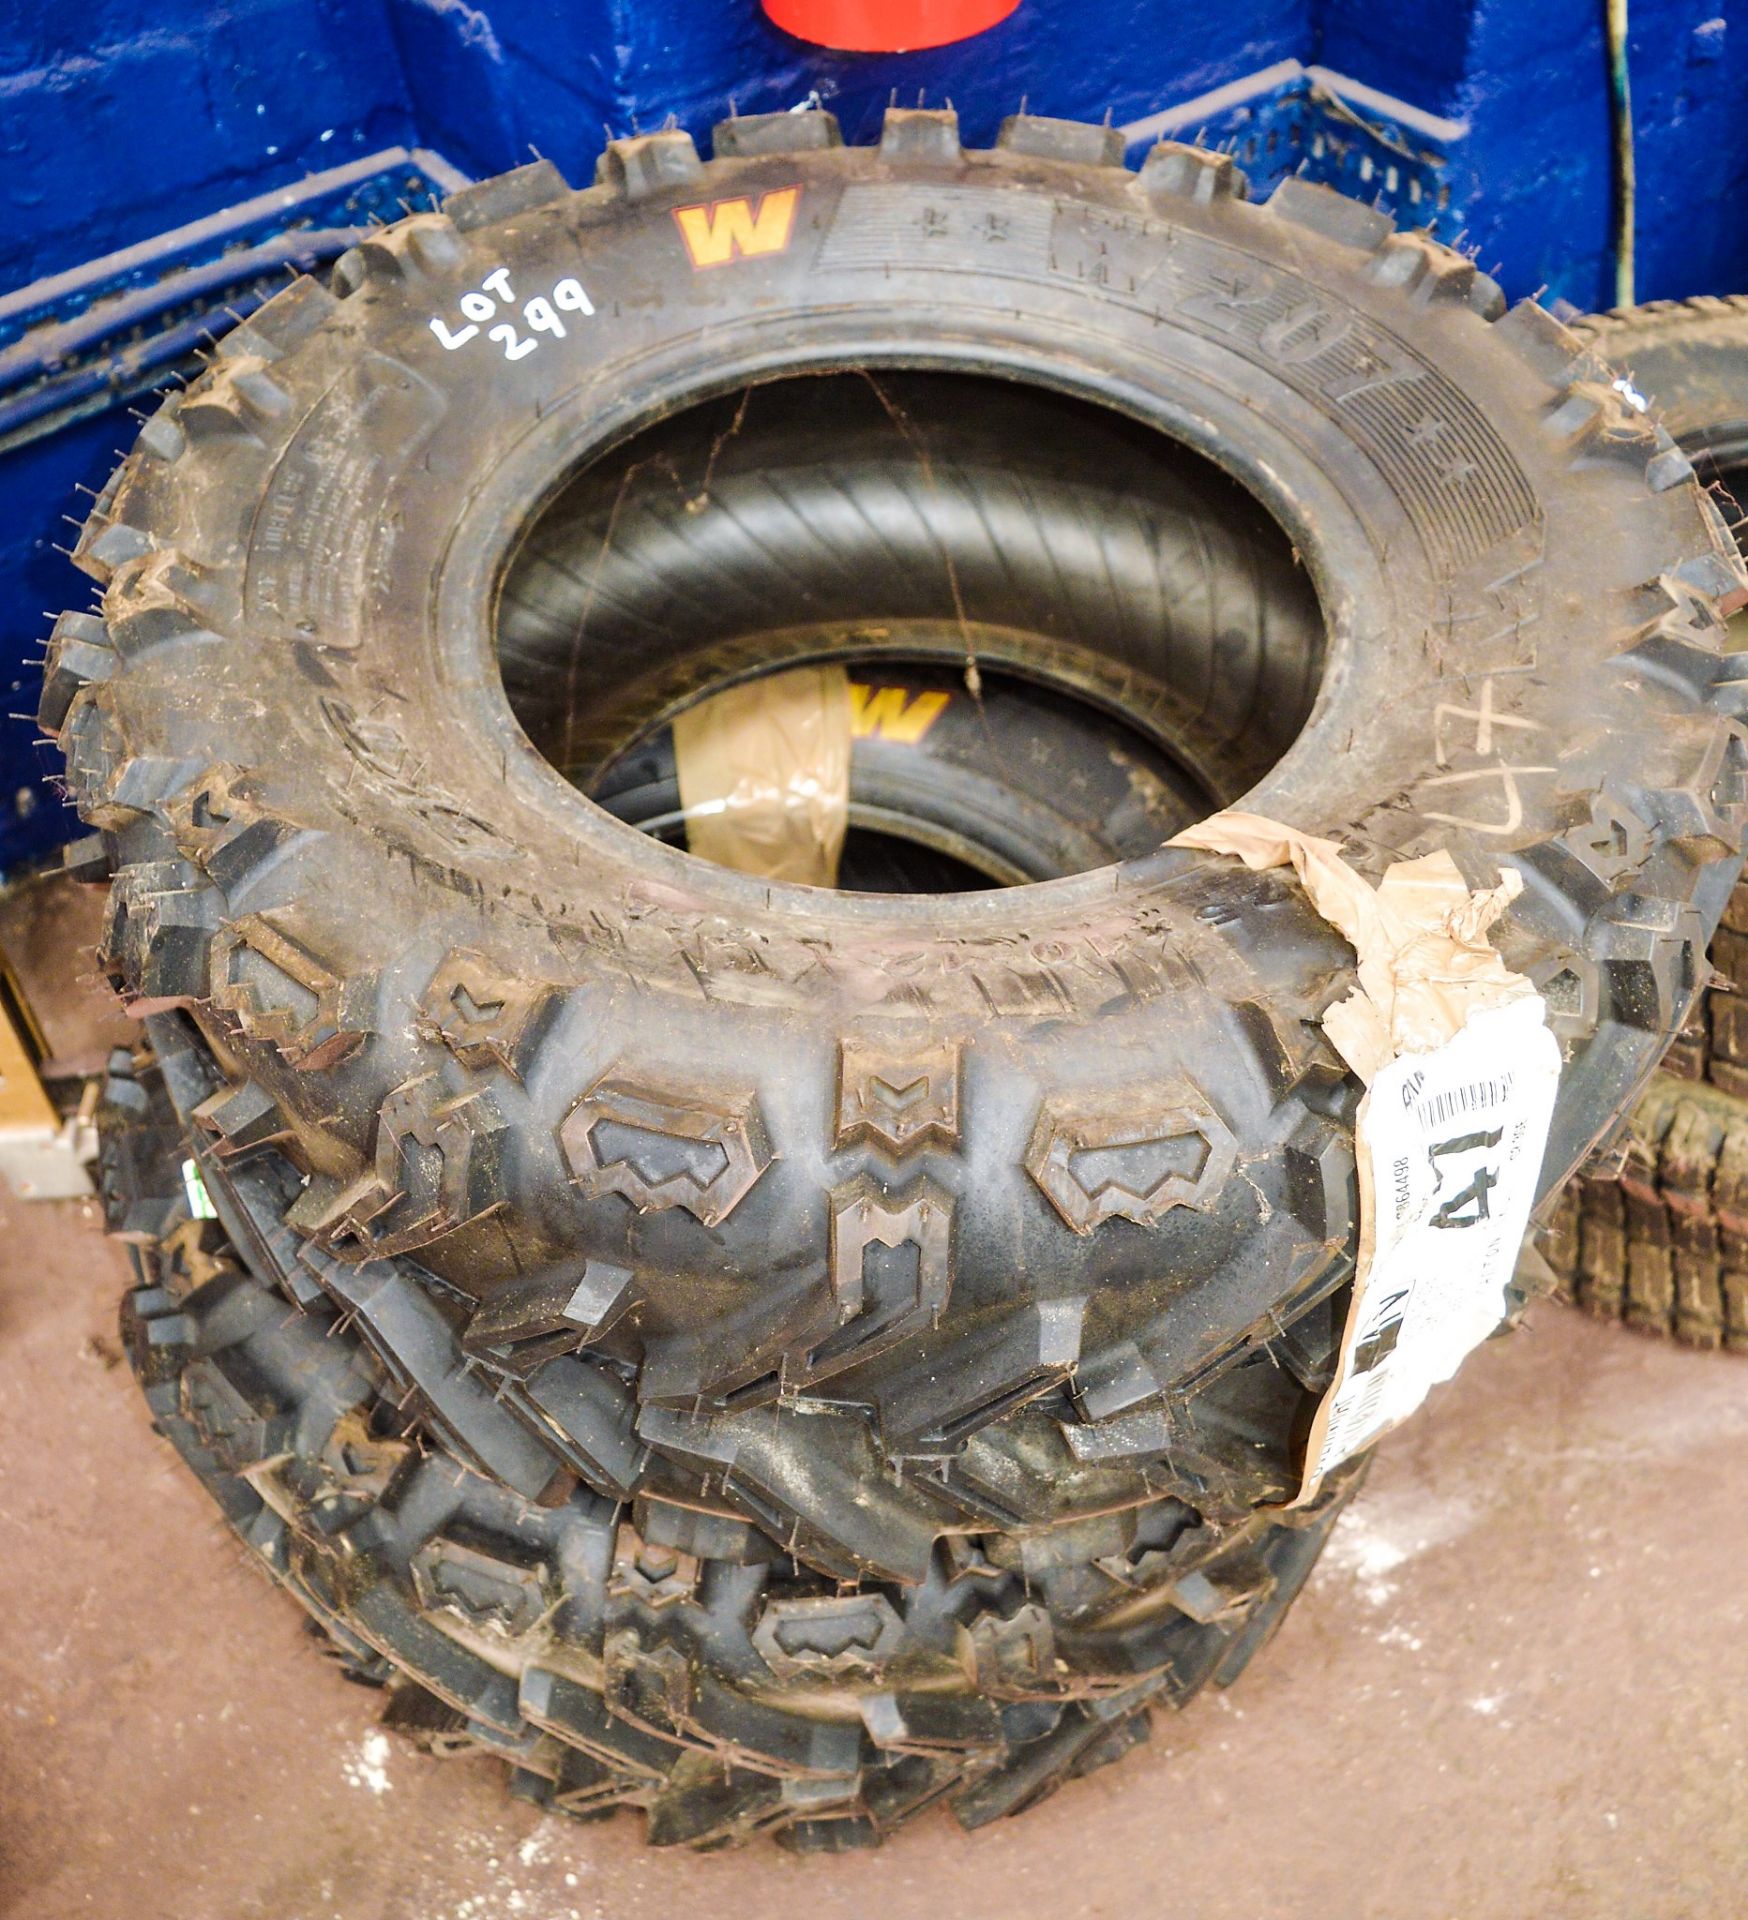 Pair of BKT AT 25 x 10 -12 ATV tyres Unused